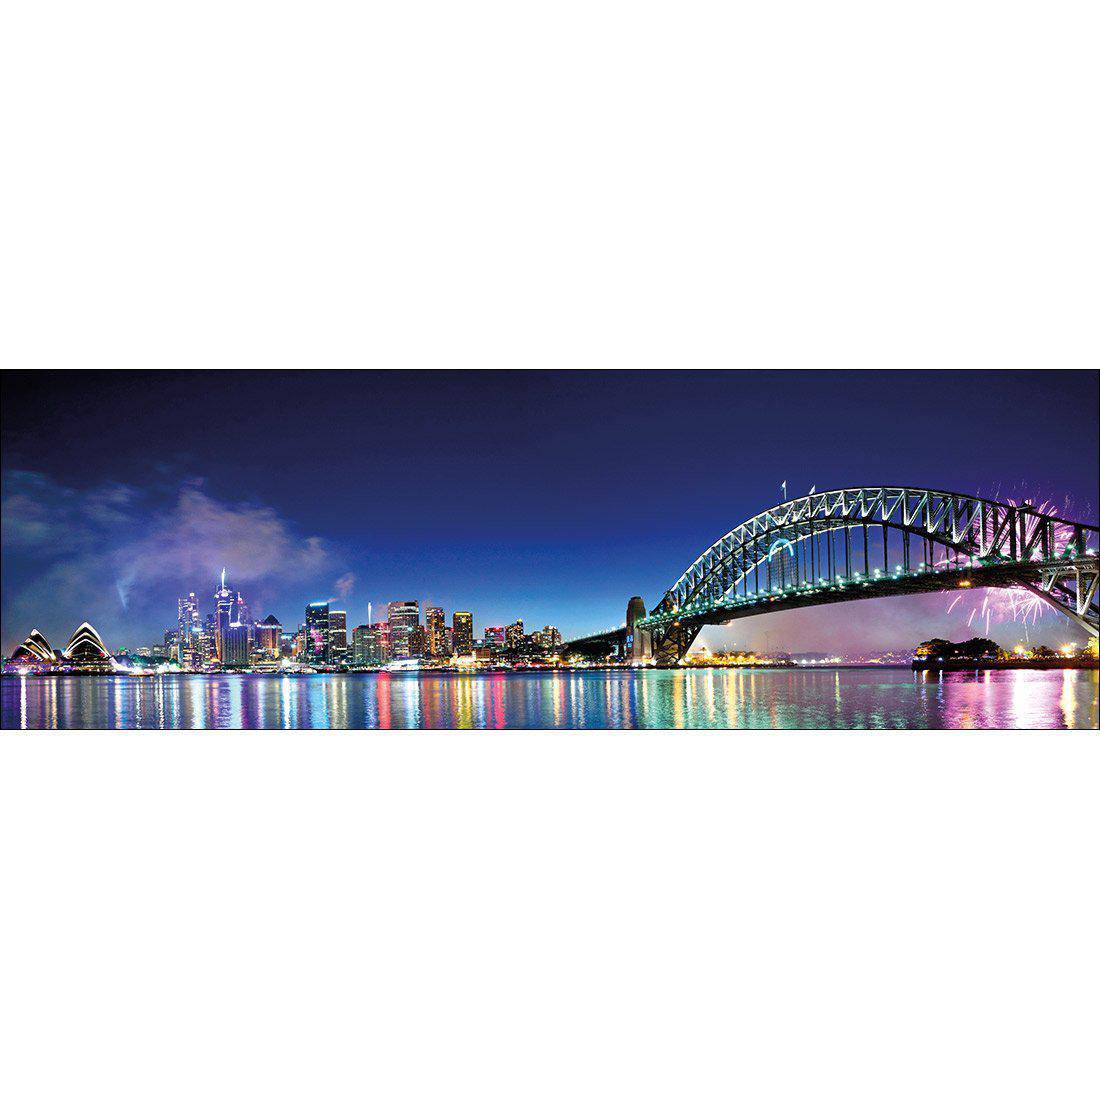 Sydney Celebration Canvas Art-Canvas-Wall Art Designs-60x20cm-Canvas - No Frame-Wall Art Designs